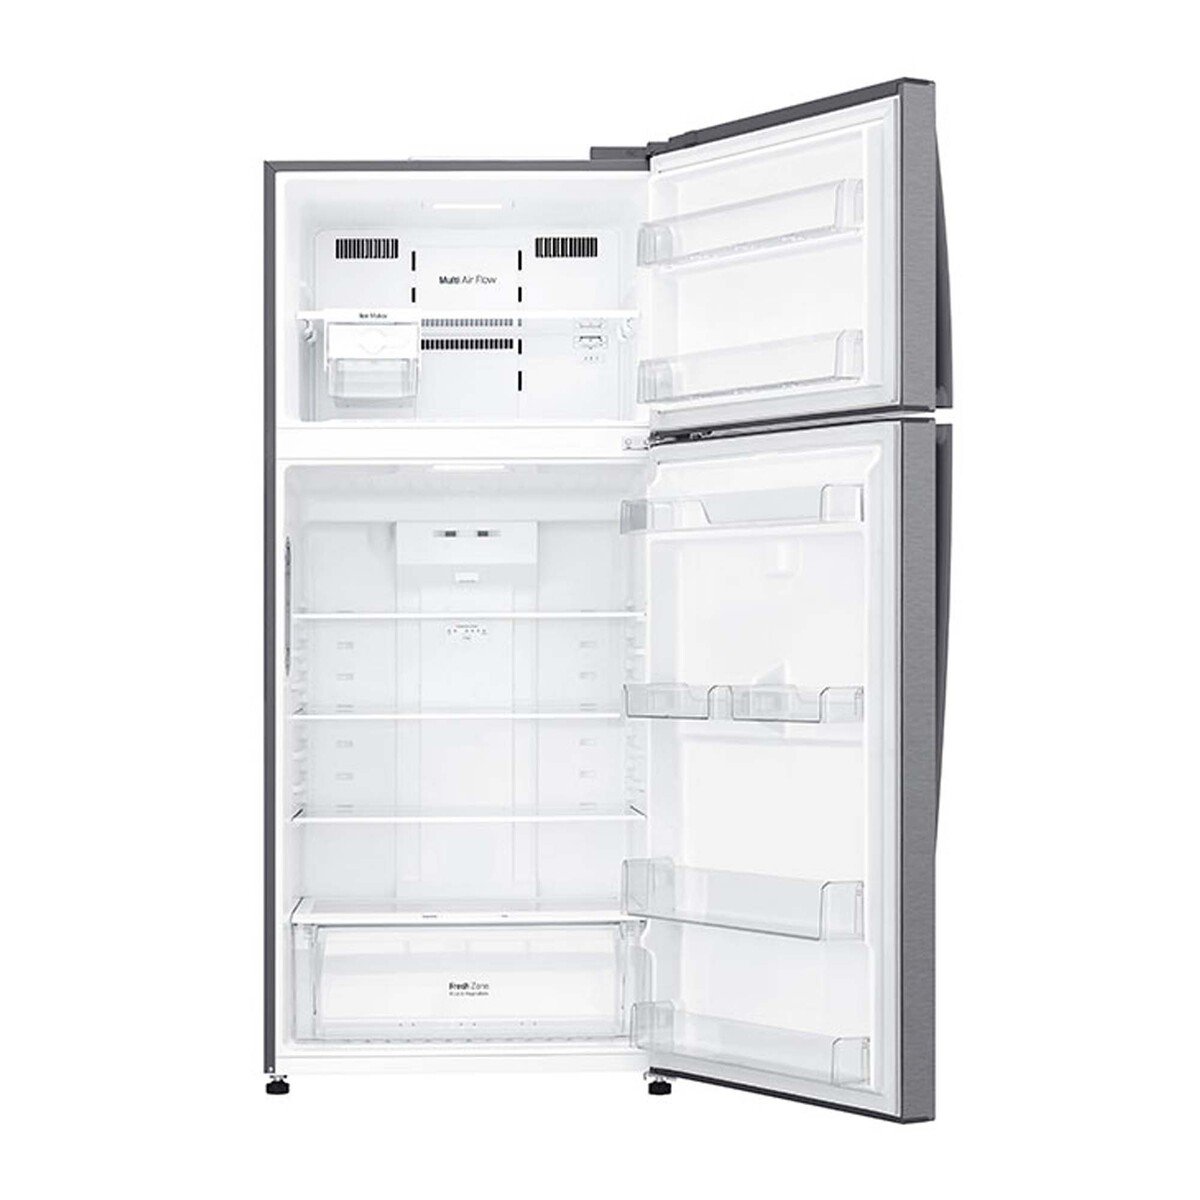 LG Double Door Refrigerator GNC782HQCU 509LTR, Inverter Linear Compressor, Door Cooling™, Multi AirFlow